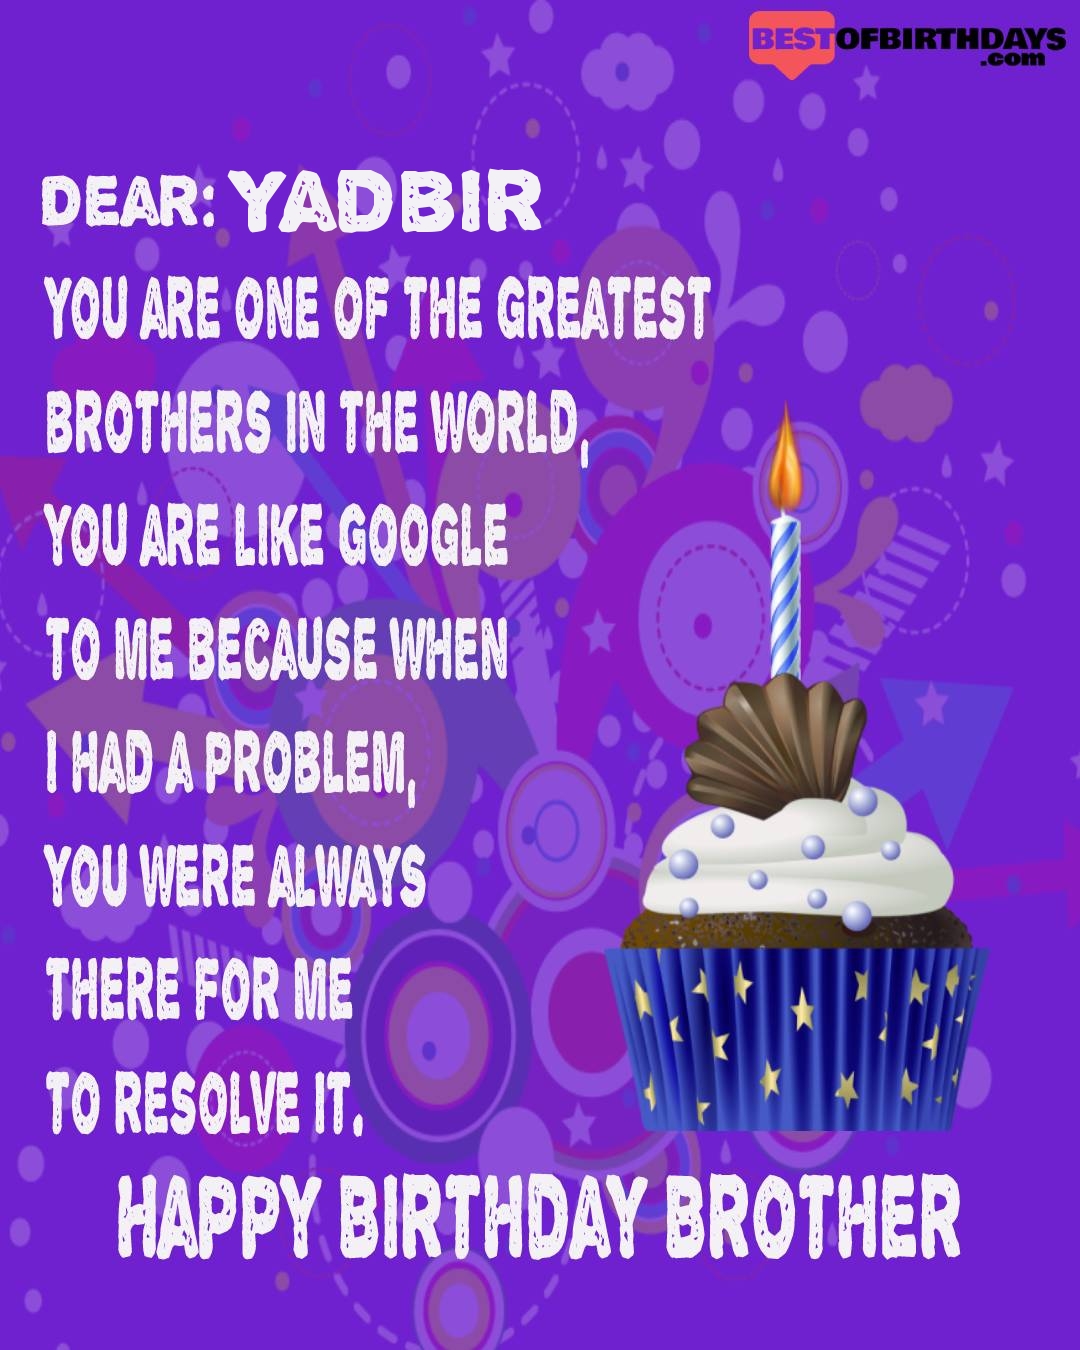 Happy birthday yadbir bhai brother bro